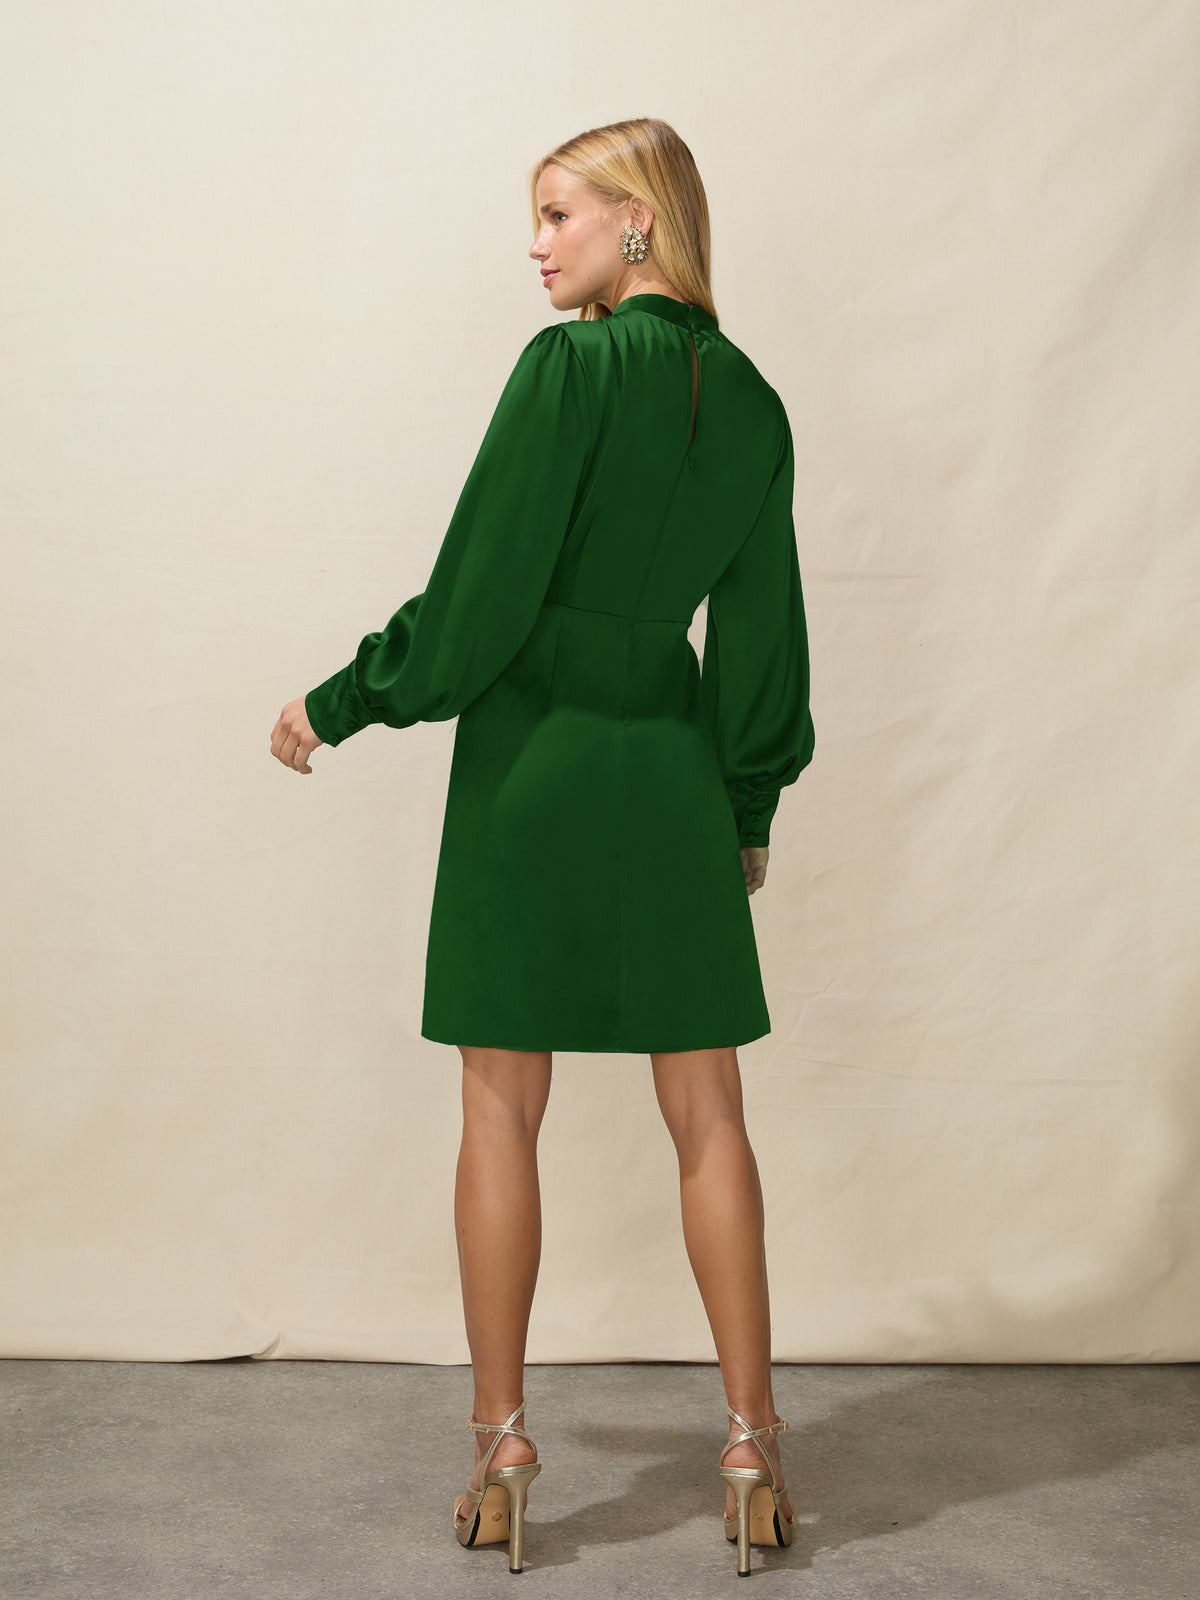 Green Satin High Neck Wrap Skirt Dress